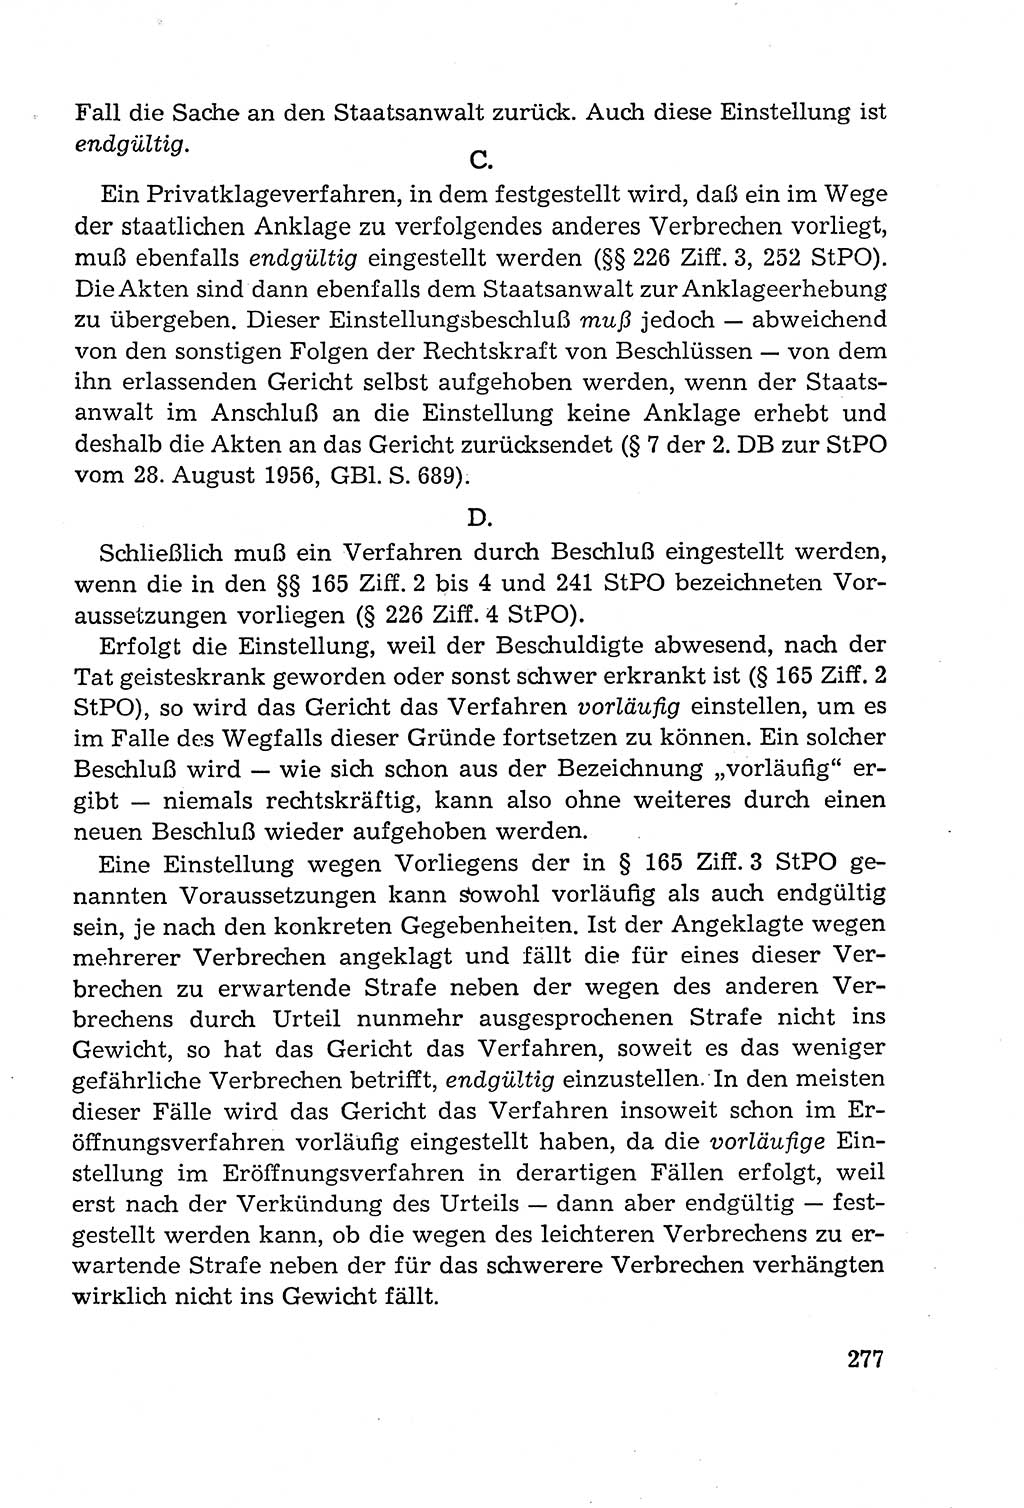 Leitfaden des Strafprozeßrechts der Deutschen Demokratischen Republik (DDR) 1959, Seite 277 (LF StPR DDR 1959, S. 277)